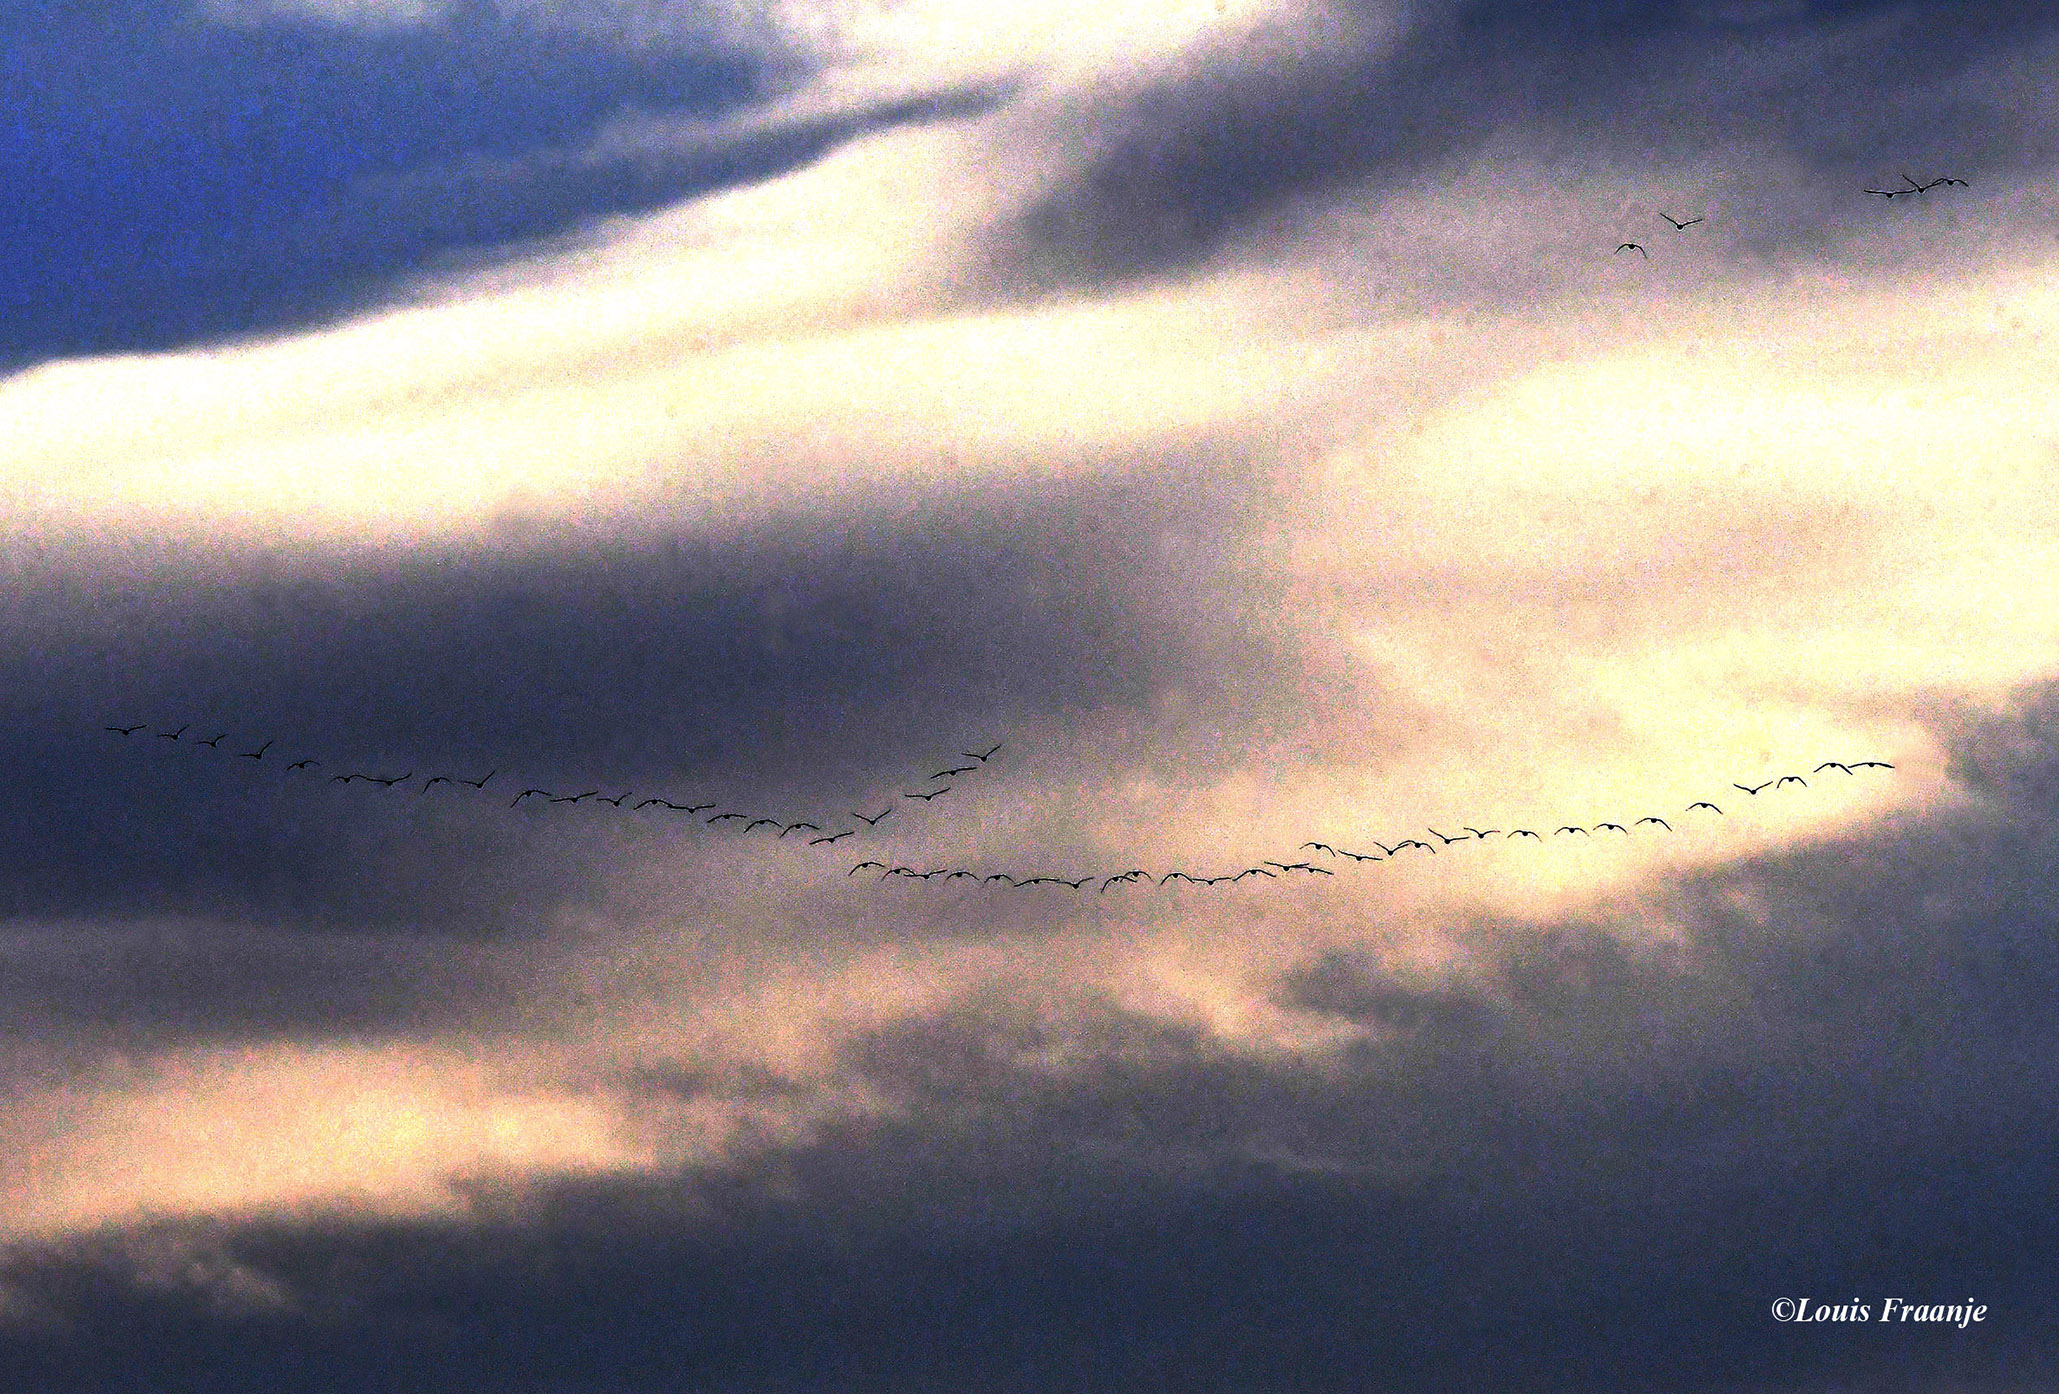 Hoog aan de hemel, vliegen wilde ganzen naar het zuiden - Foto: ©Louis Fraanje